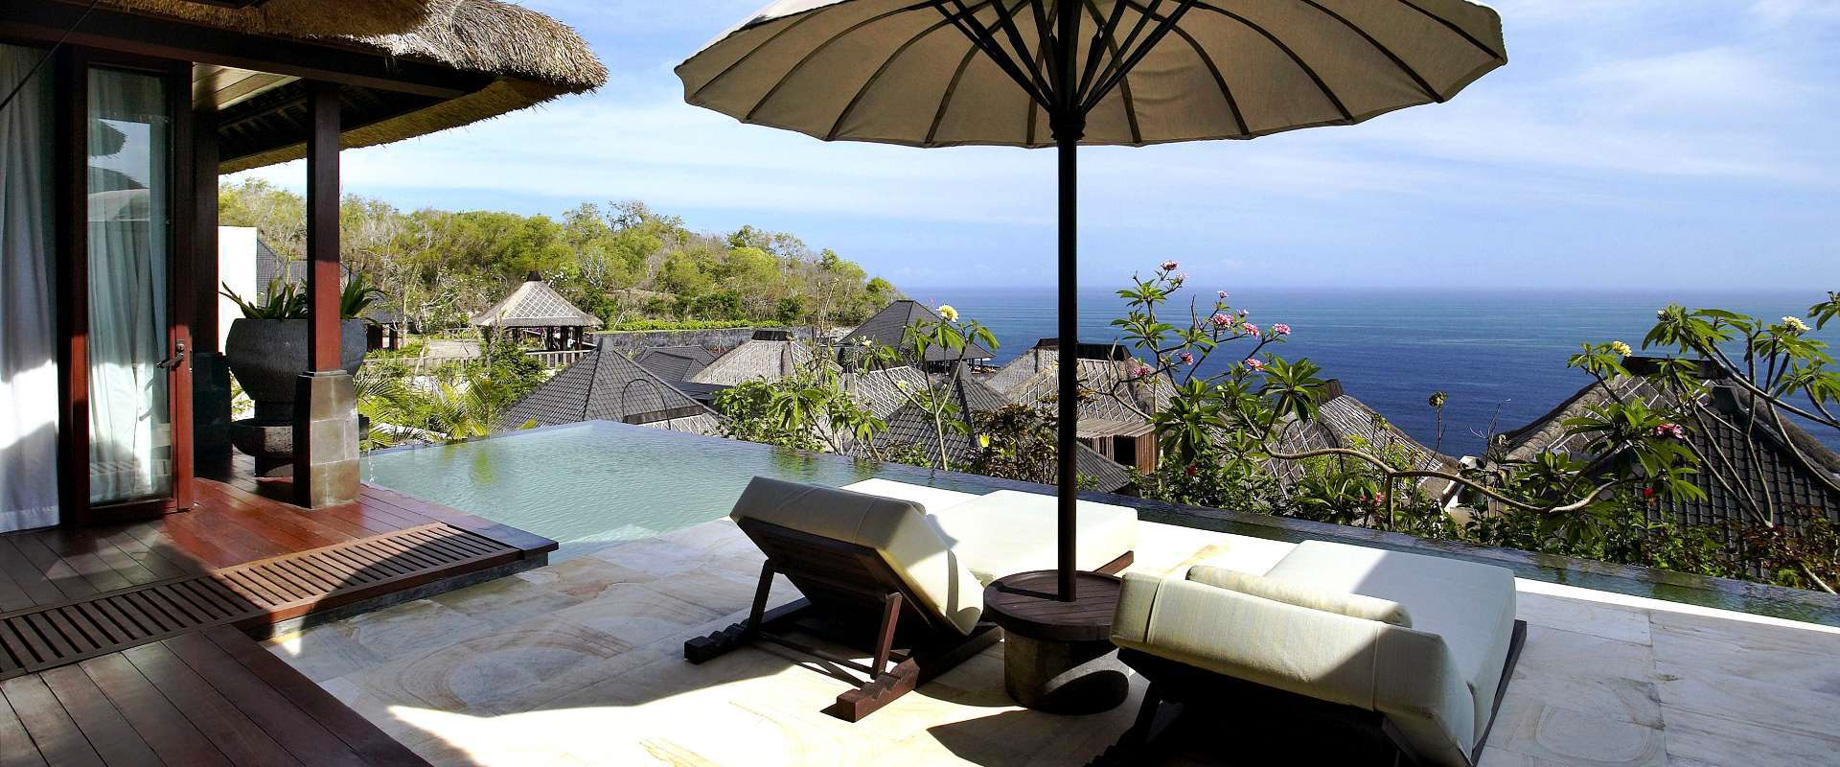 Bvlgari Resort Bali – Uluwatu, Bali, Indonesia – Ocean View Villa Pool Deck